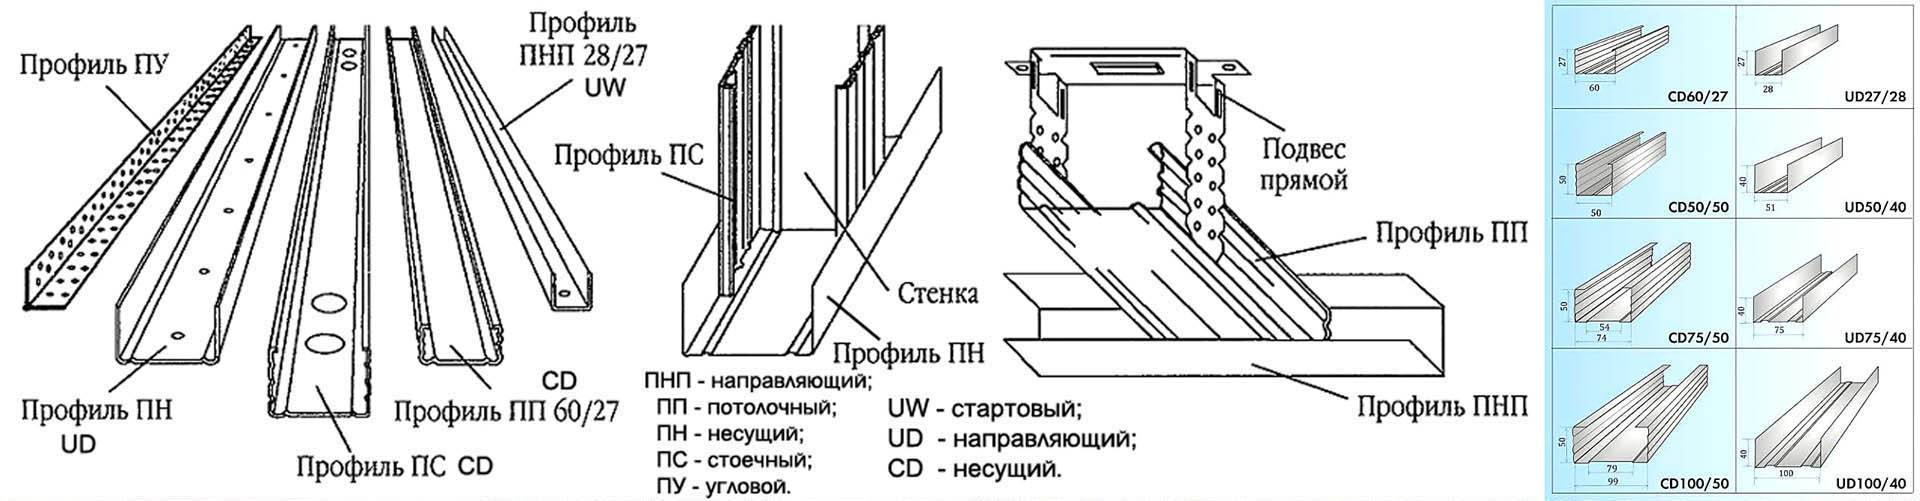 Гипсокартон: плюсы и минусы перегородок, потолков, выравнивания стен и откосов – обзор от мастера тибота